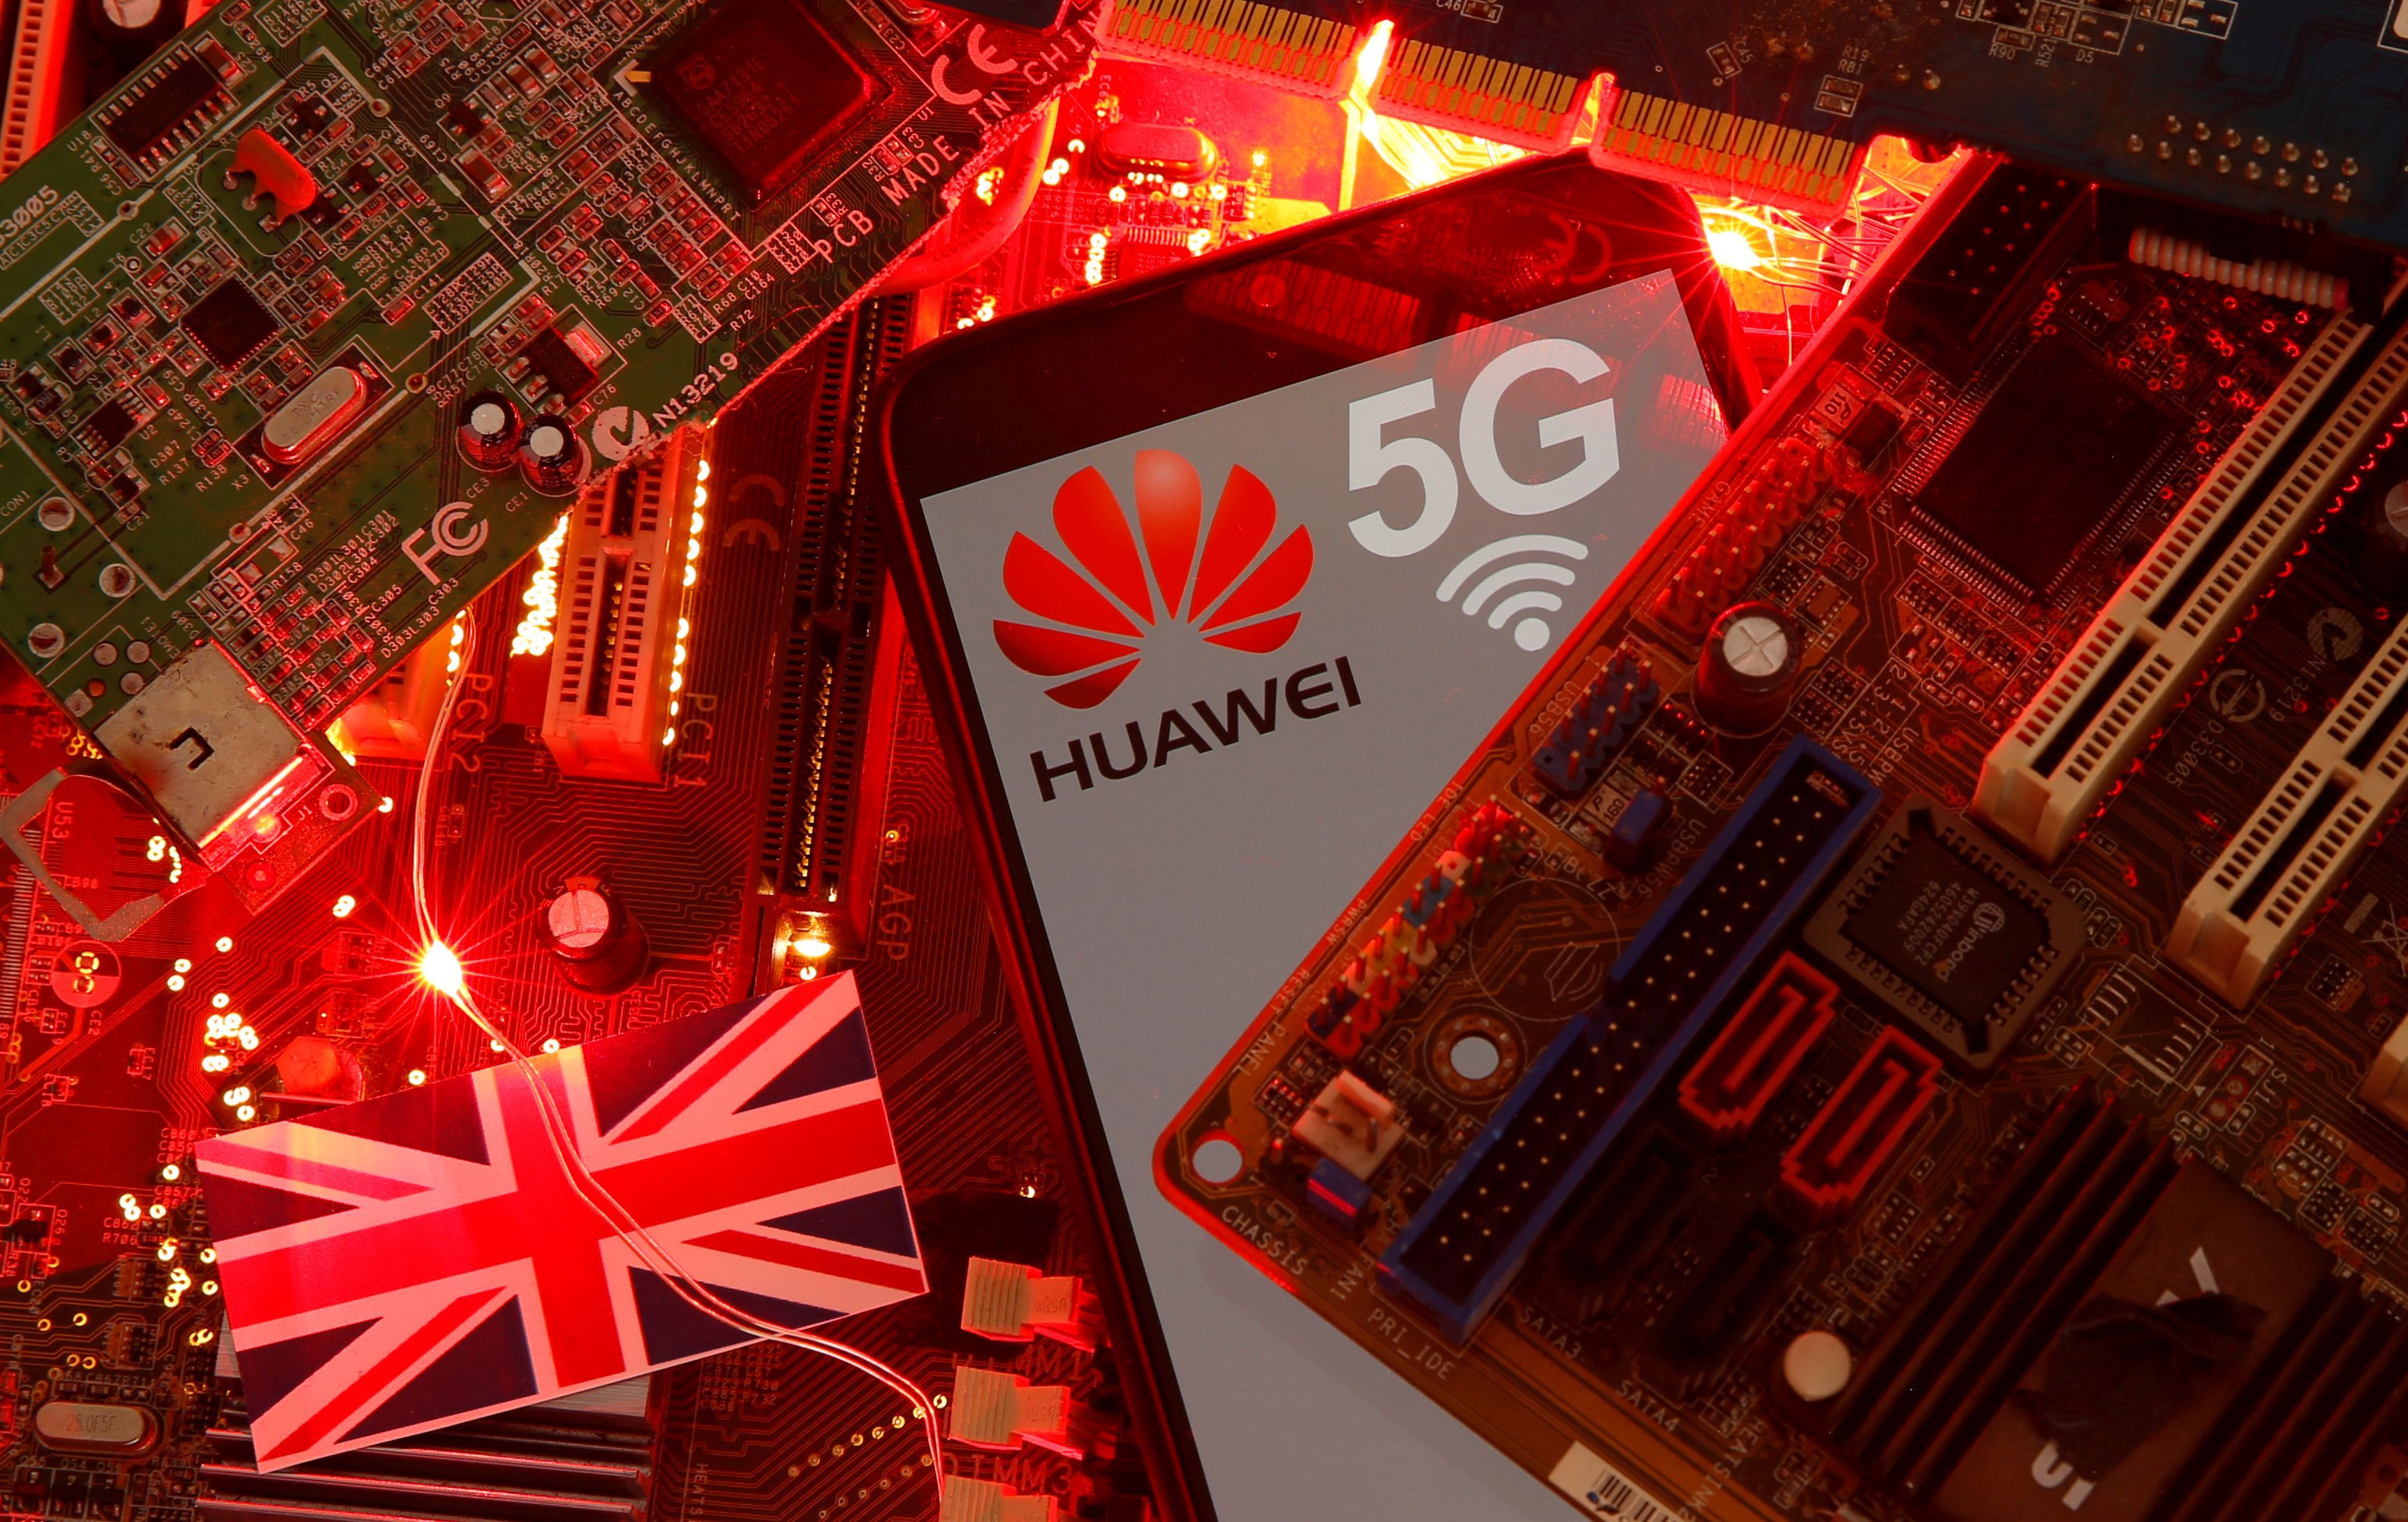 El próximo martes 14 de julio se conocerá la decisión del gobierno británico sobre la participación de Huawei en la red de 5G del país